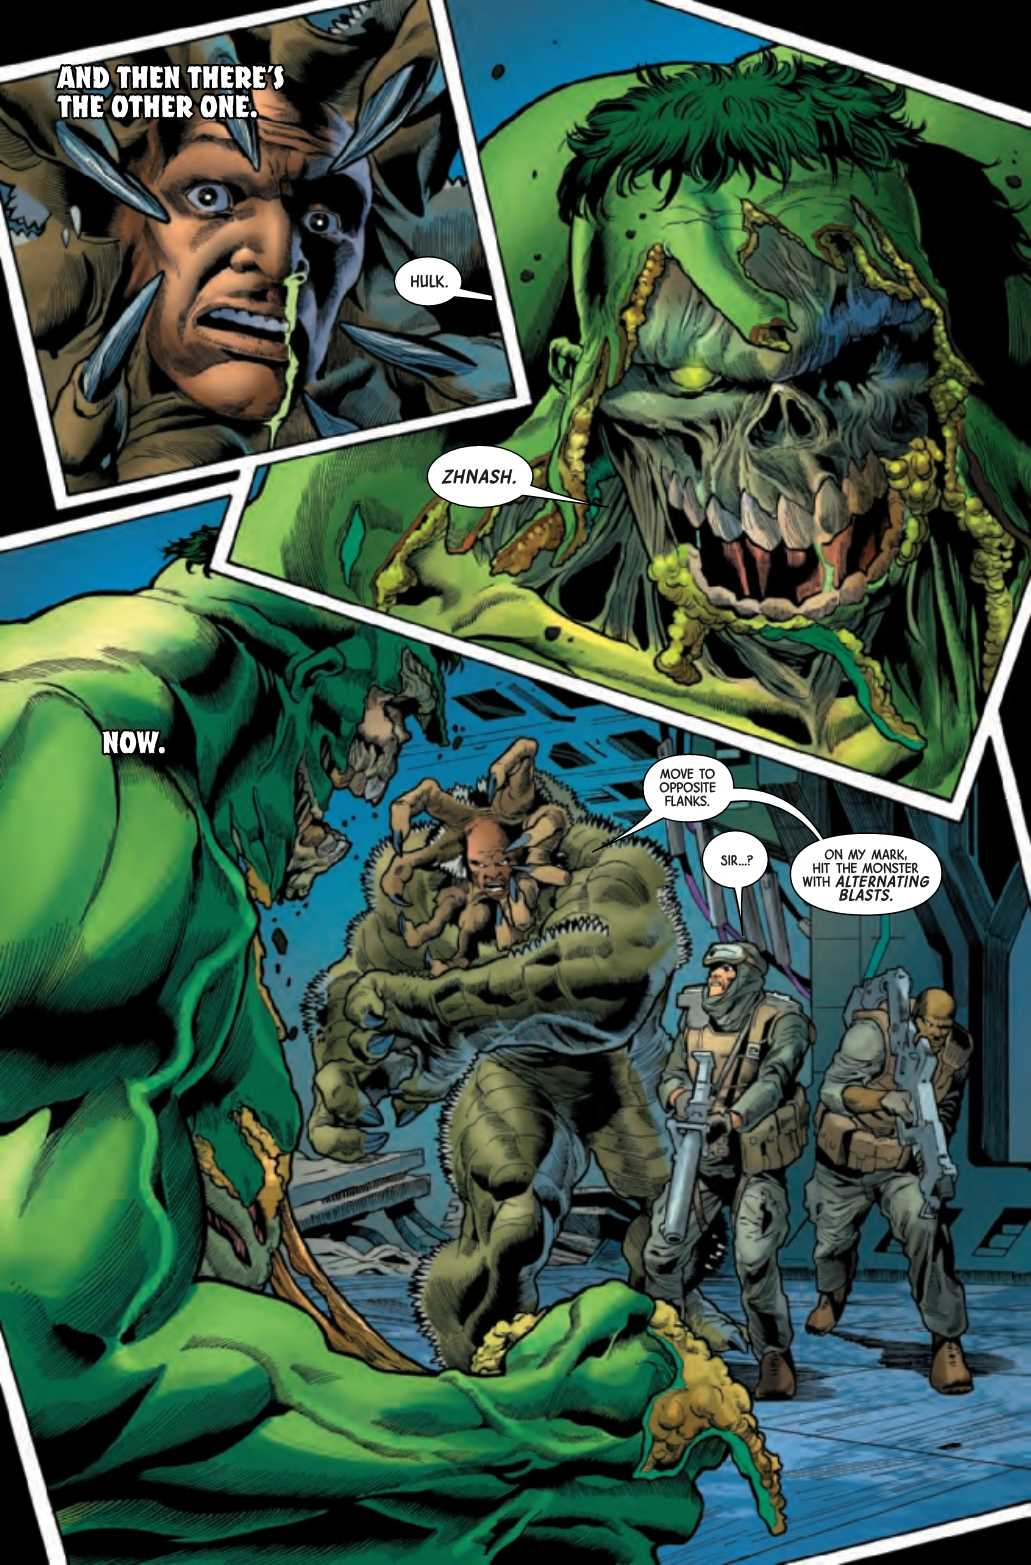 Marvel Comics Universe & Immortal Hulk Spoilers: Penultimate Issue Before Milestone Immortal Hulk & Debut Of Cosmic Hulk? Preview!